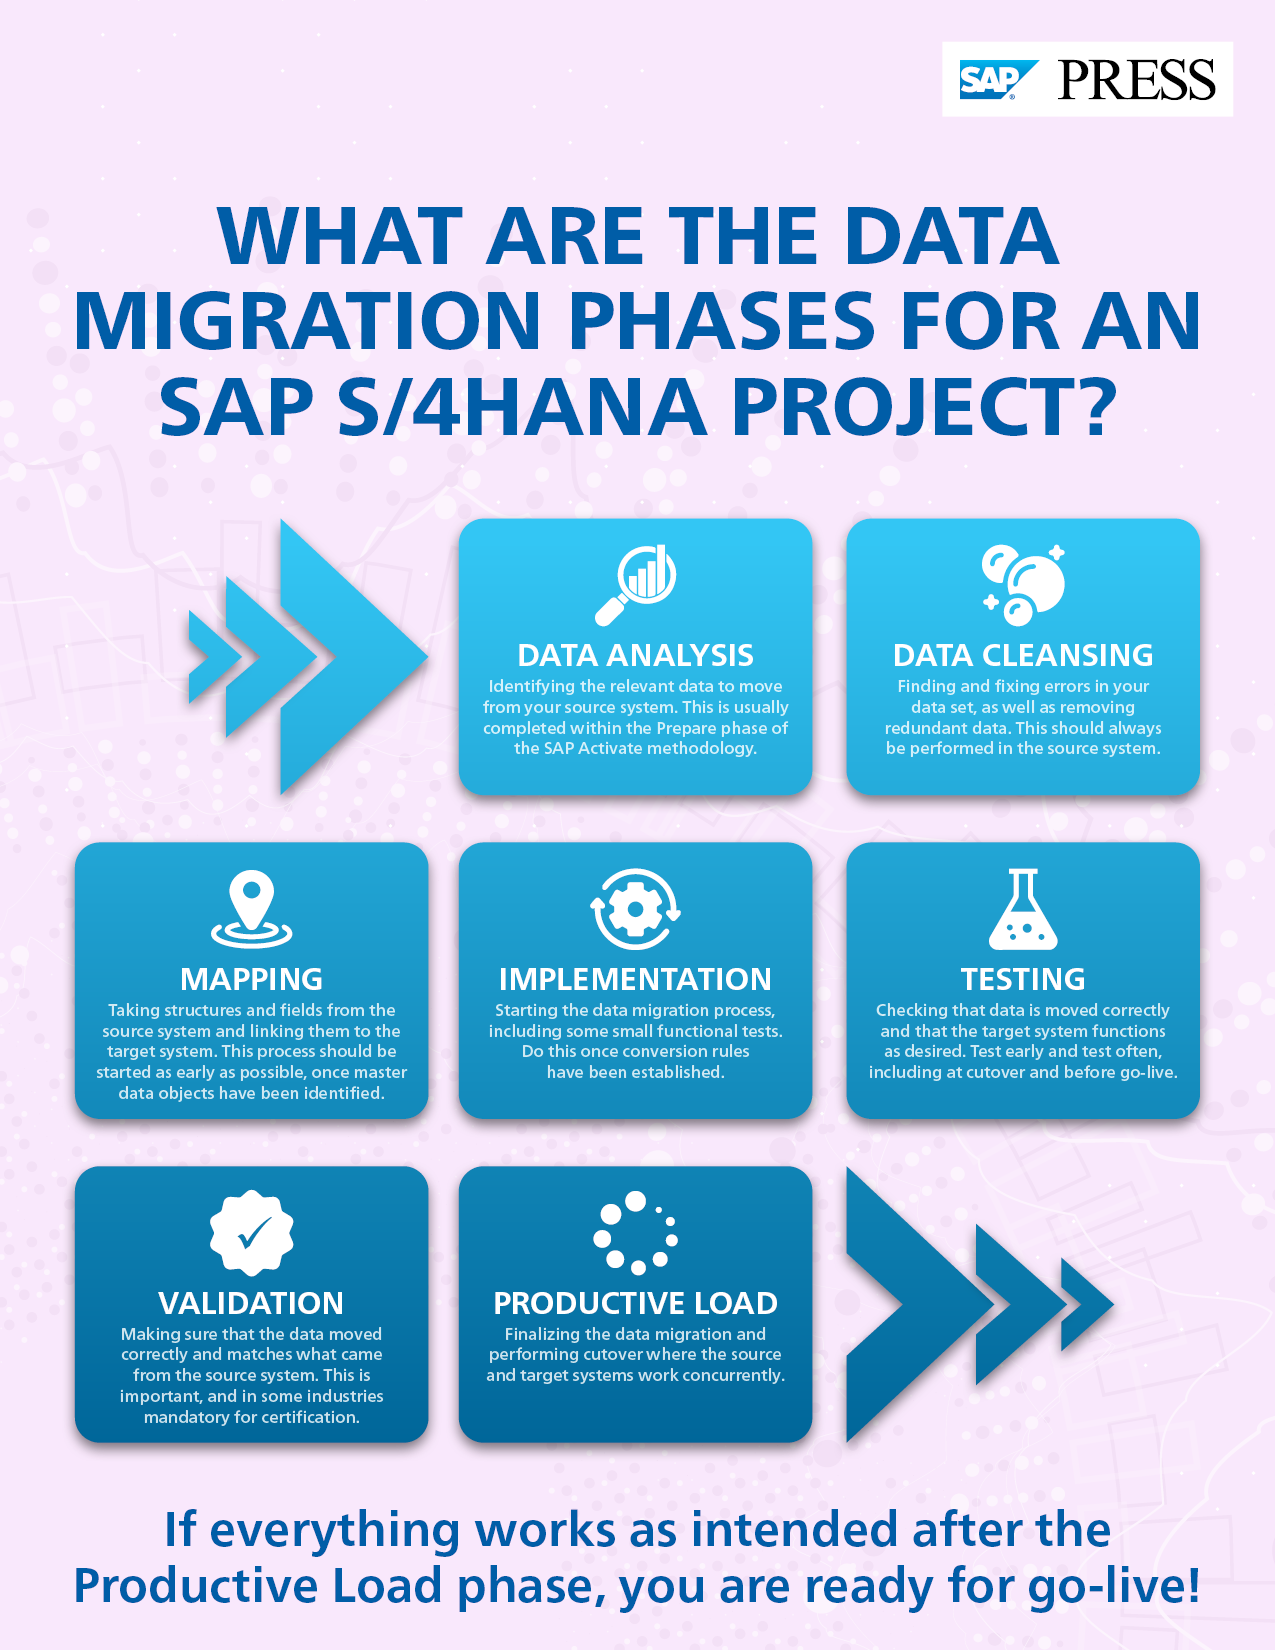 Data Migration Phases for SAP S/4HANA